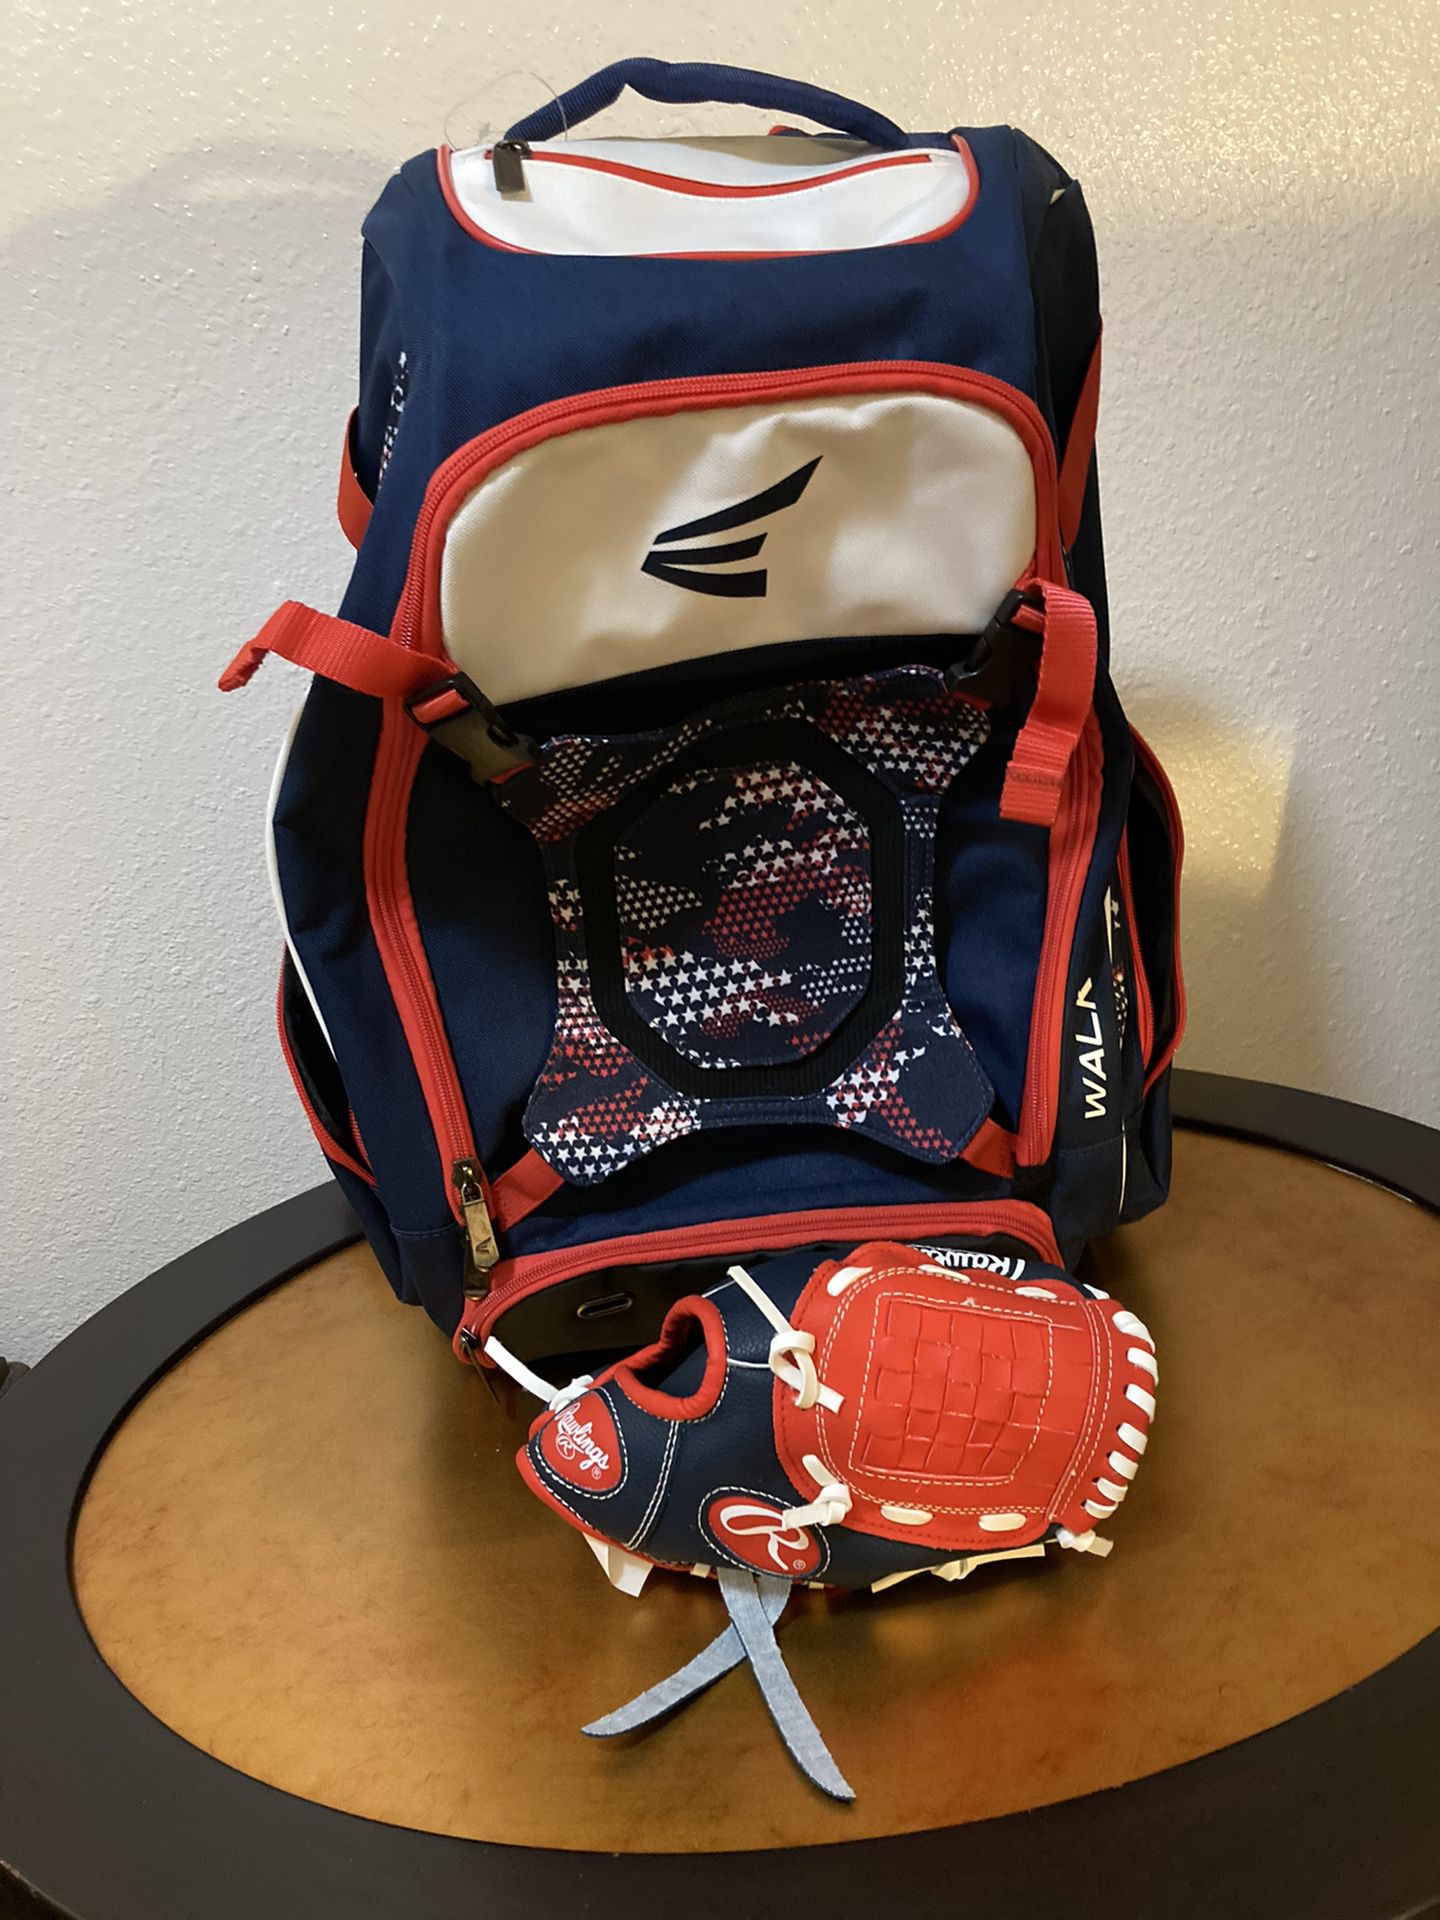 American Baseball Back back + Kids Glove 